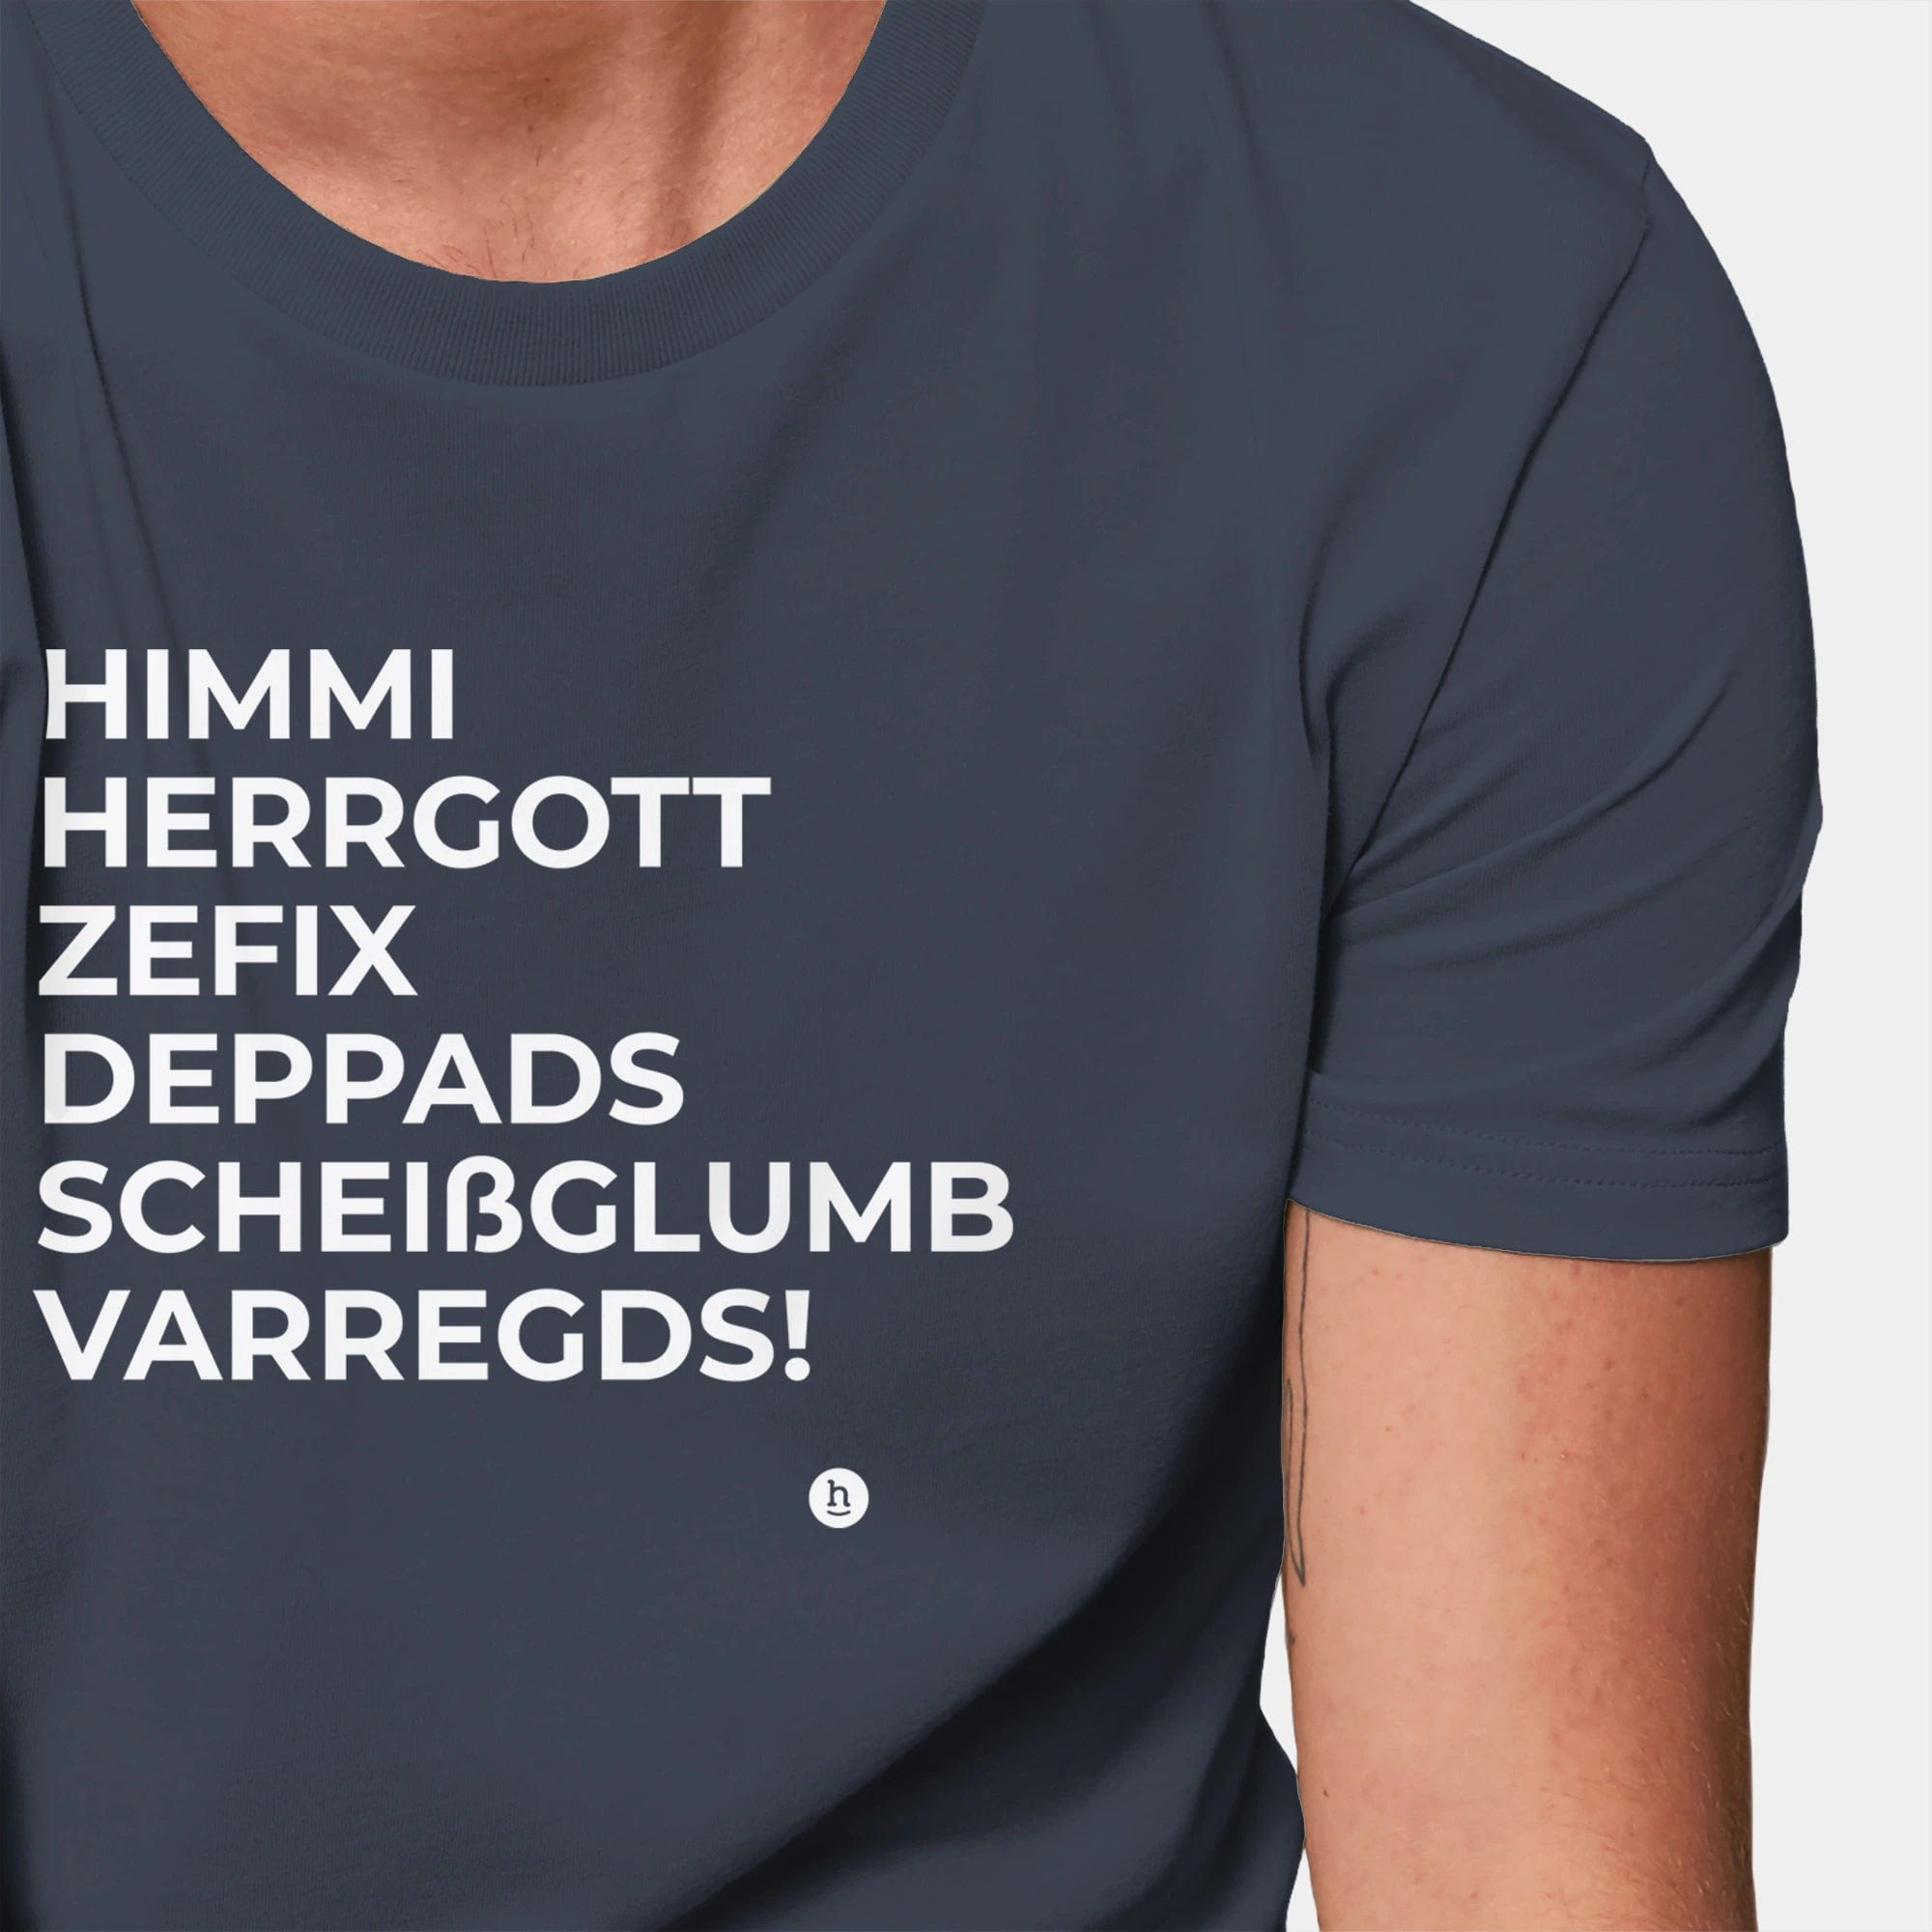 HEITER & LÄSSIG T-Shirt "Himmi Herrgott" - aus nachhaltiger und fairer Produktion